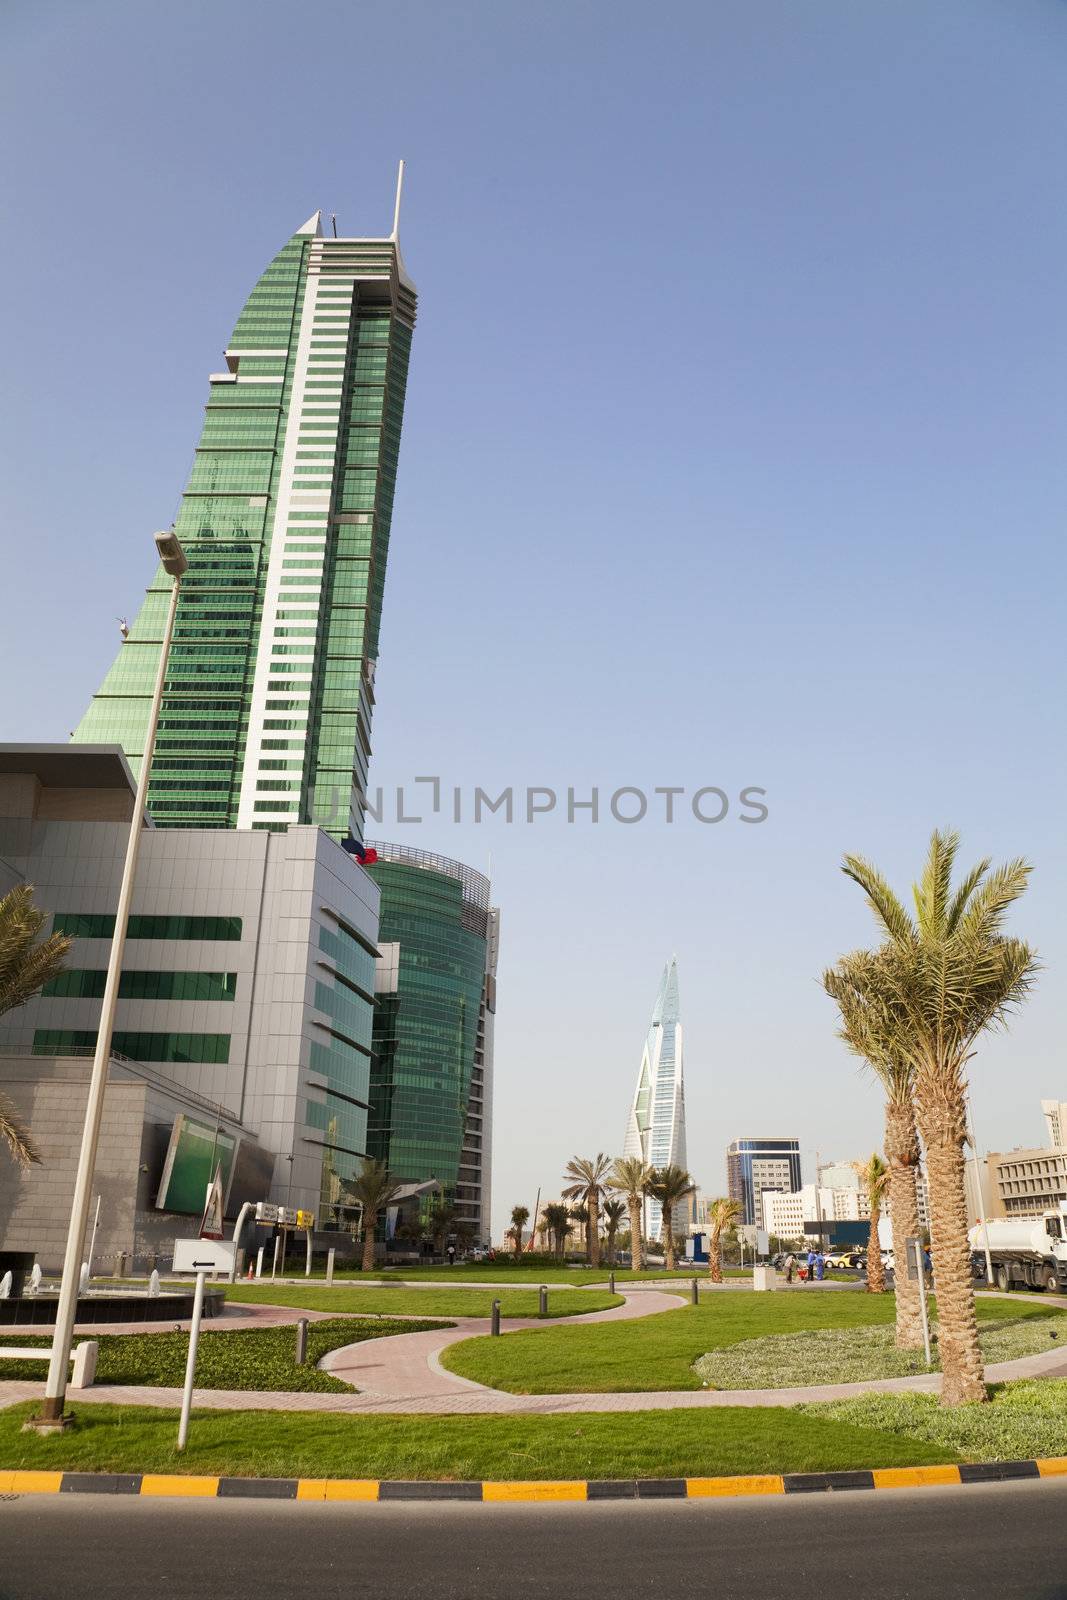 Manama, Bahrain by shariffc